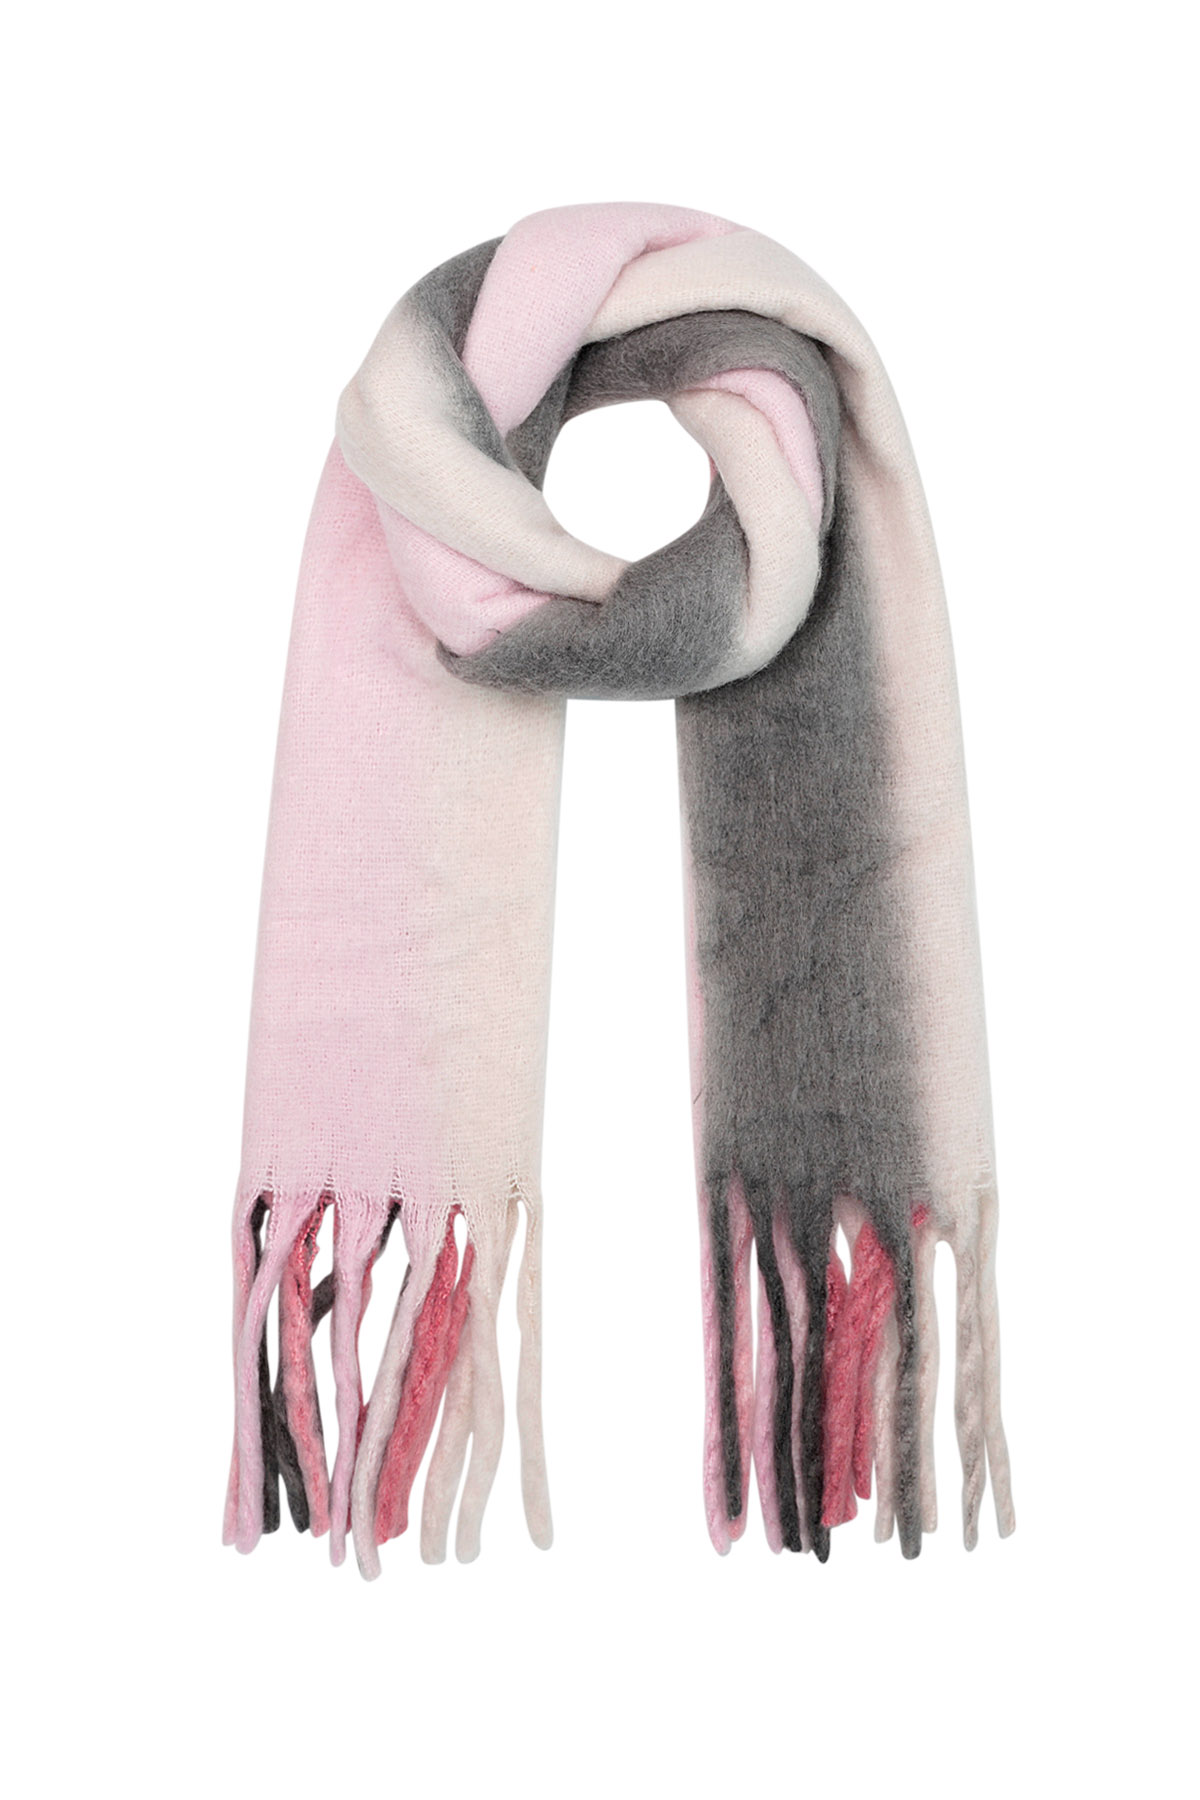 Sciarpa invernale colori sfumati rosa/grigio Poliestere h5 